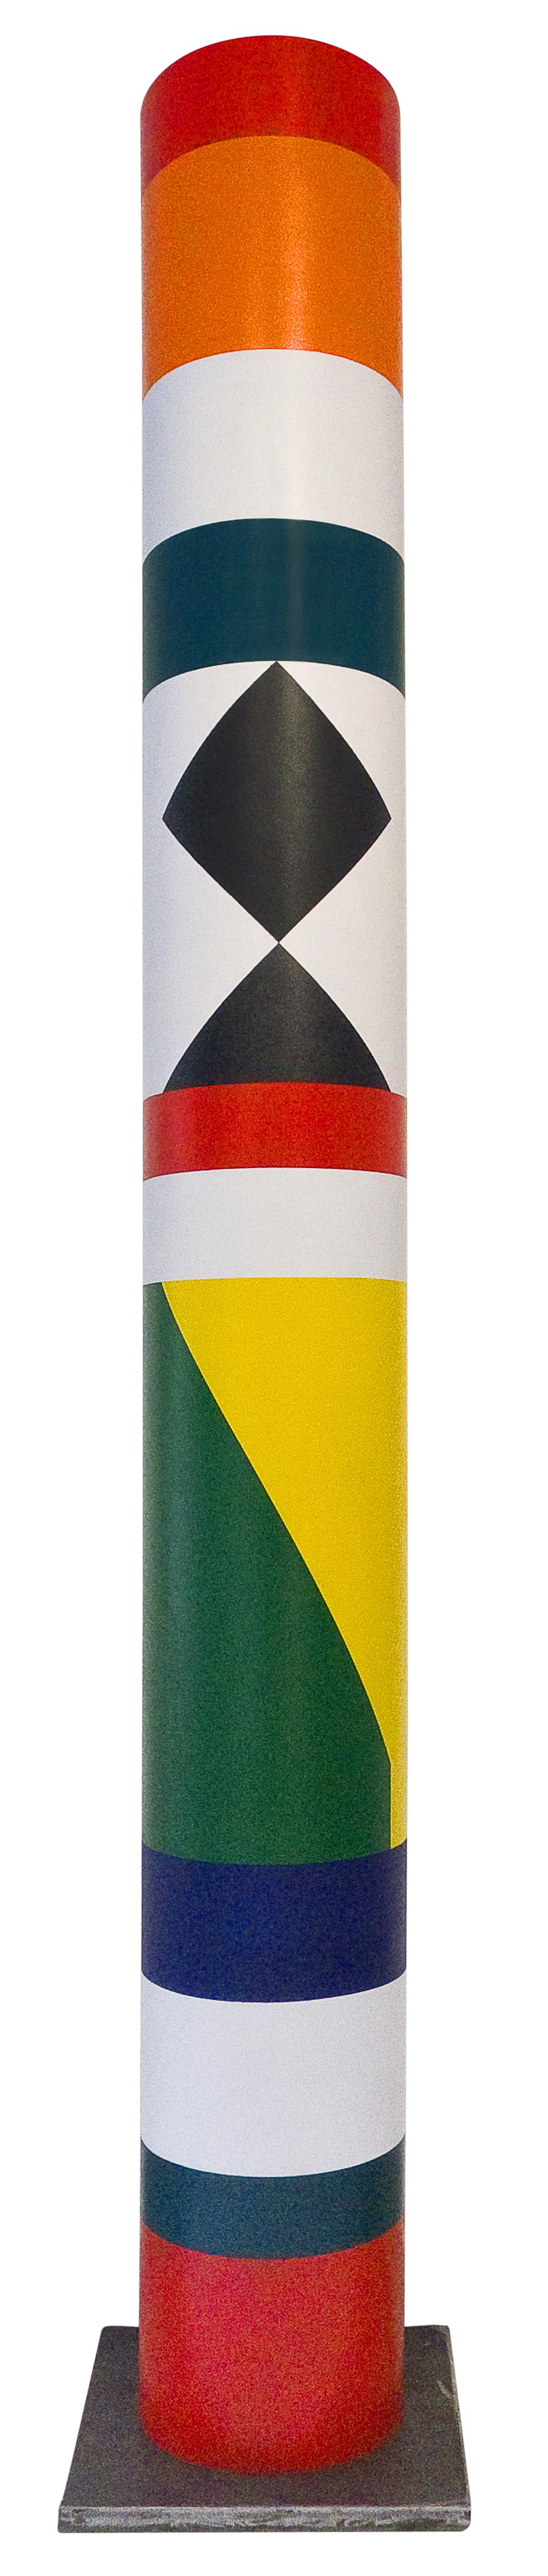 GUY DE ROUGEMONT
Totem – 2019
Painted PVC
H 280 cm / 110.2 in. , Edition of 8 pieces
H 180 cm / 70.8 in. , unique piece